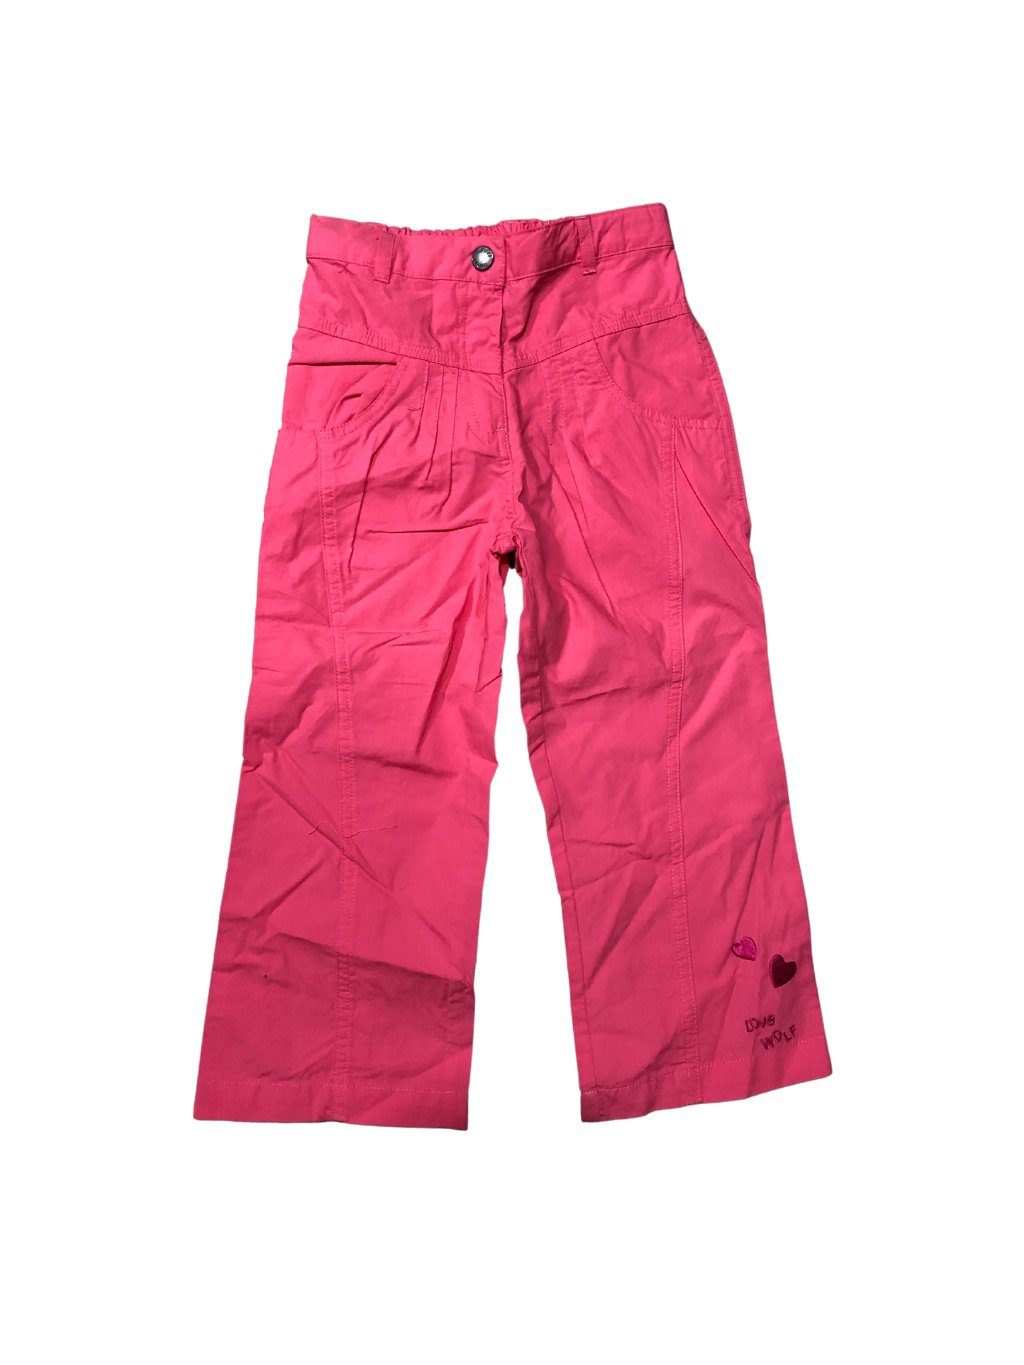 Kalhoty plátěné dětské dívčí (98-128) WOLF T2251